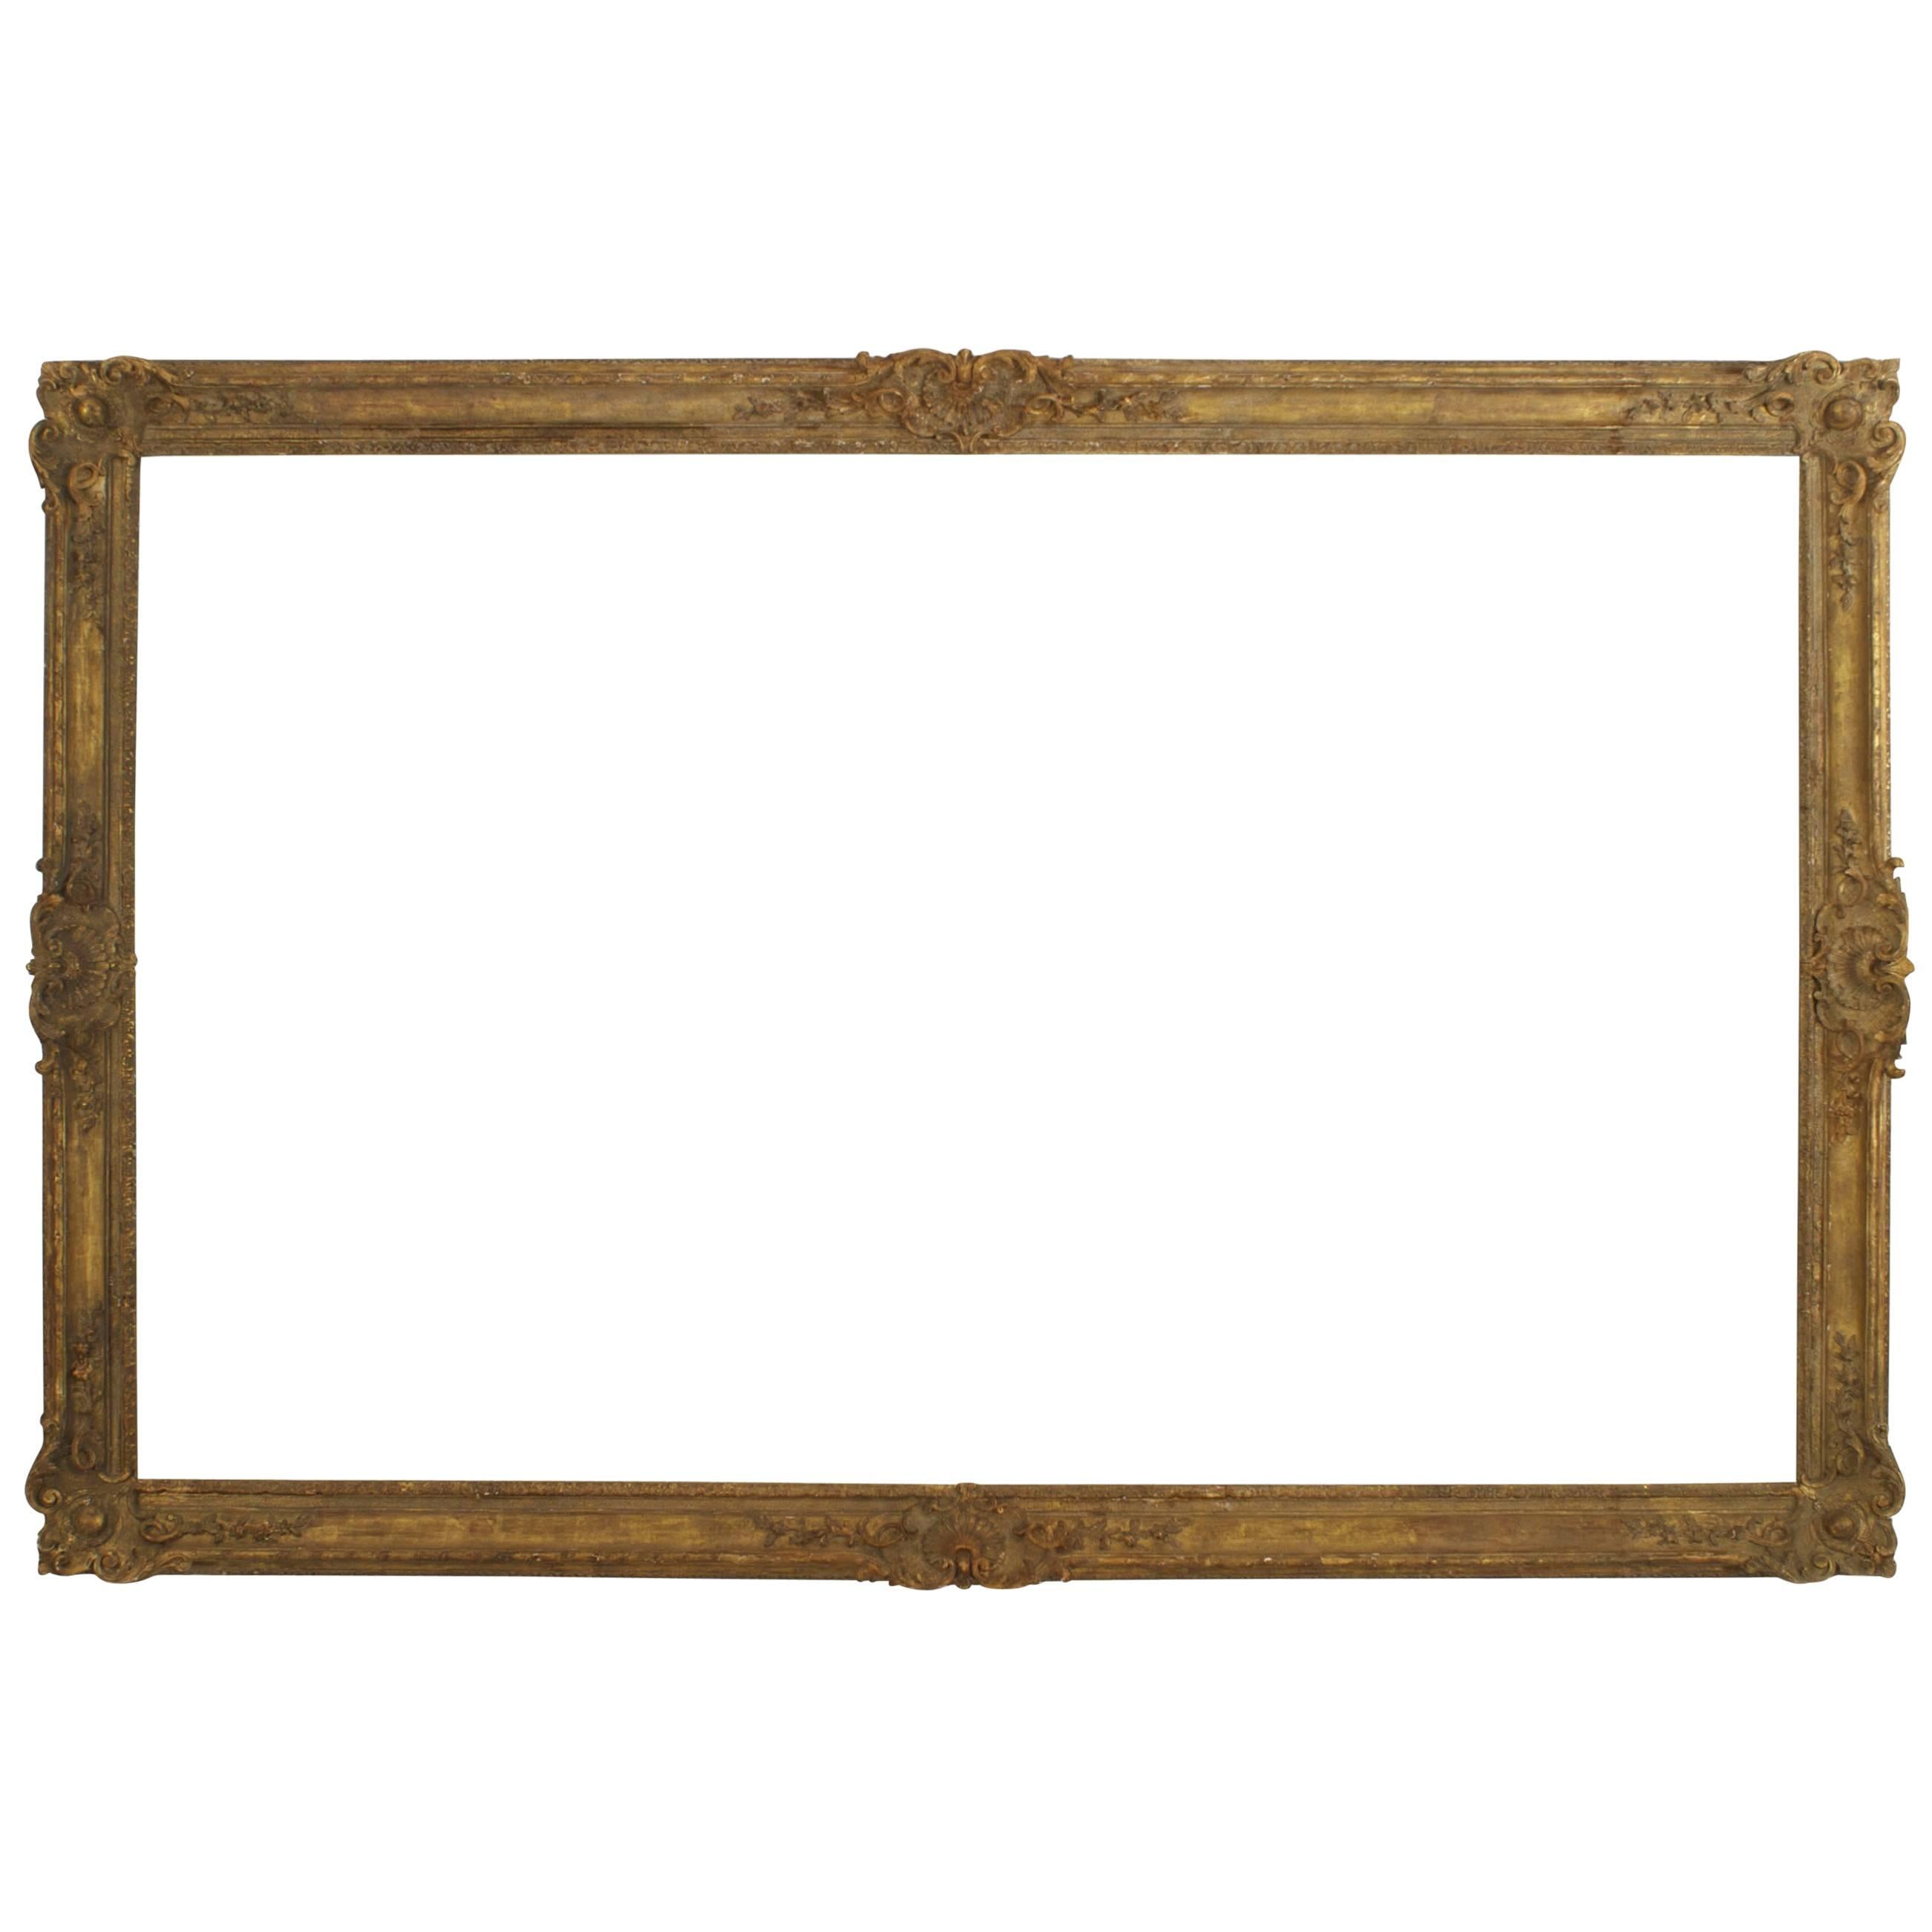 Spiegel aus geschnitztem vergoldetem Holz im Stil Louis XV.